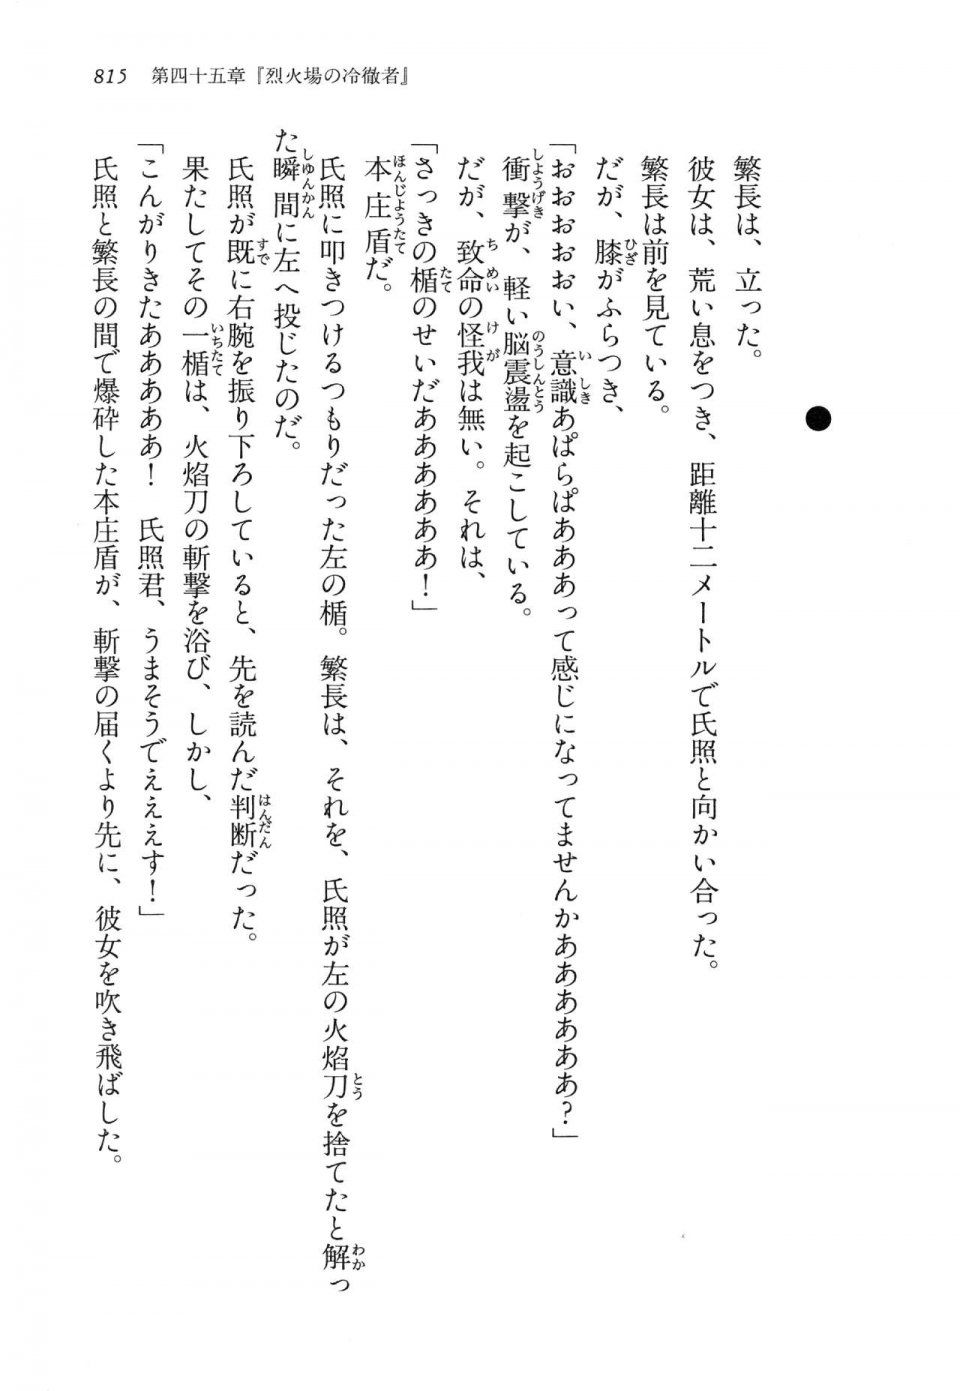 Kyoukai Senjou no Horizon LN Vol 14(6B) - Photo #815